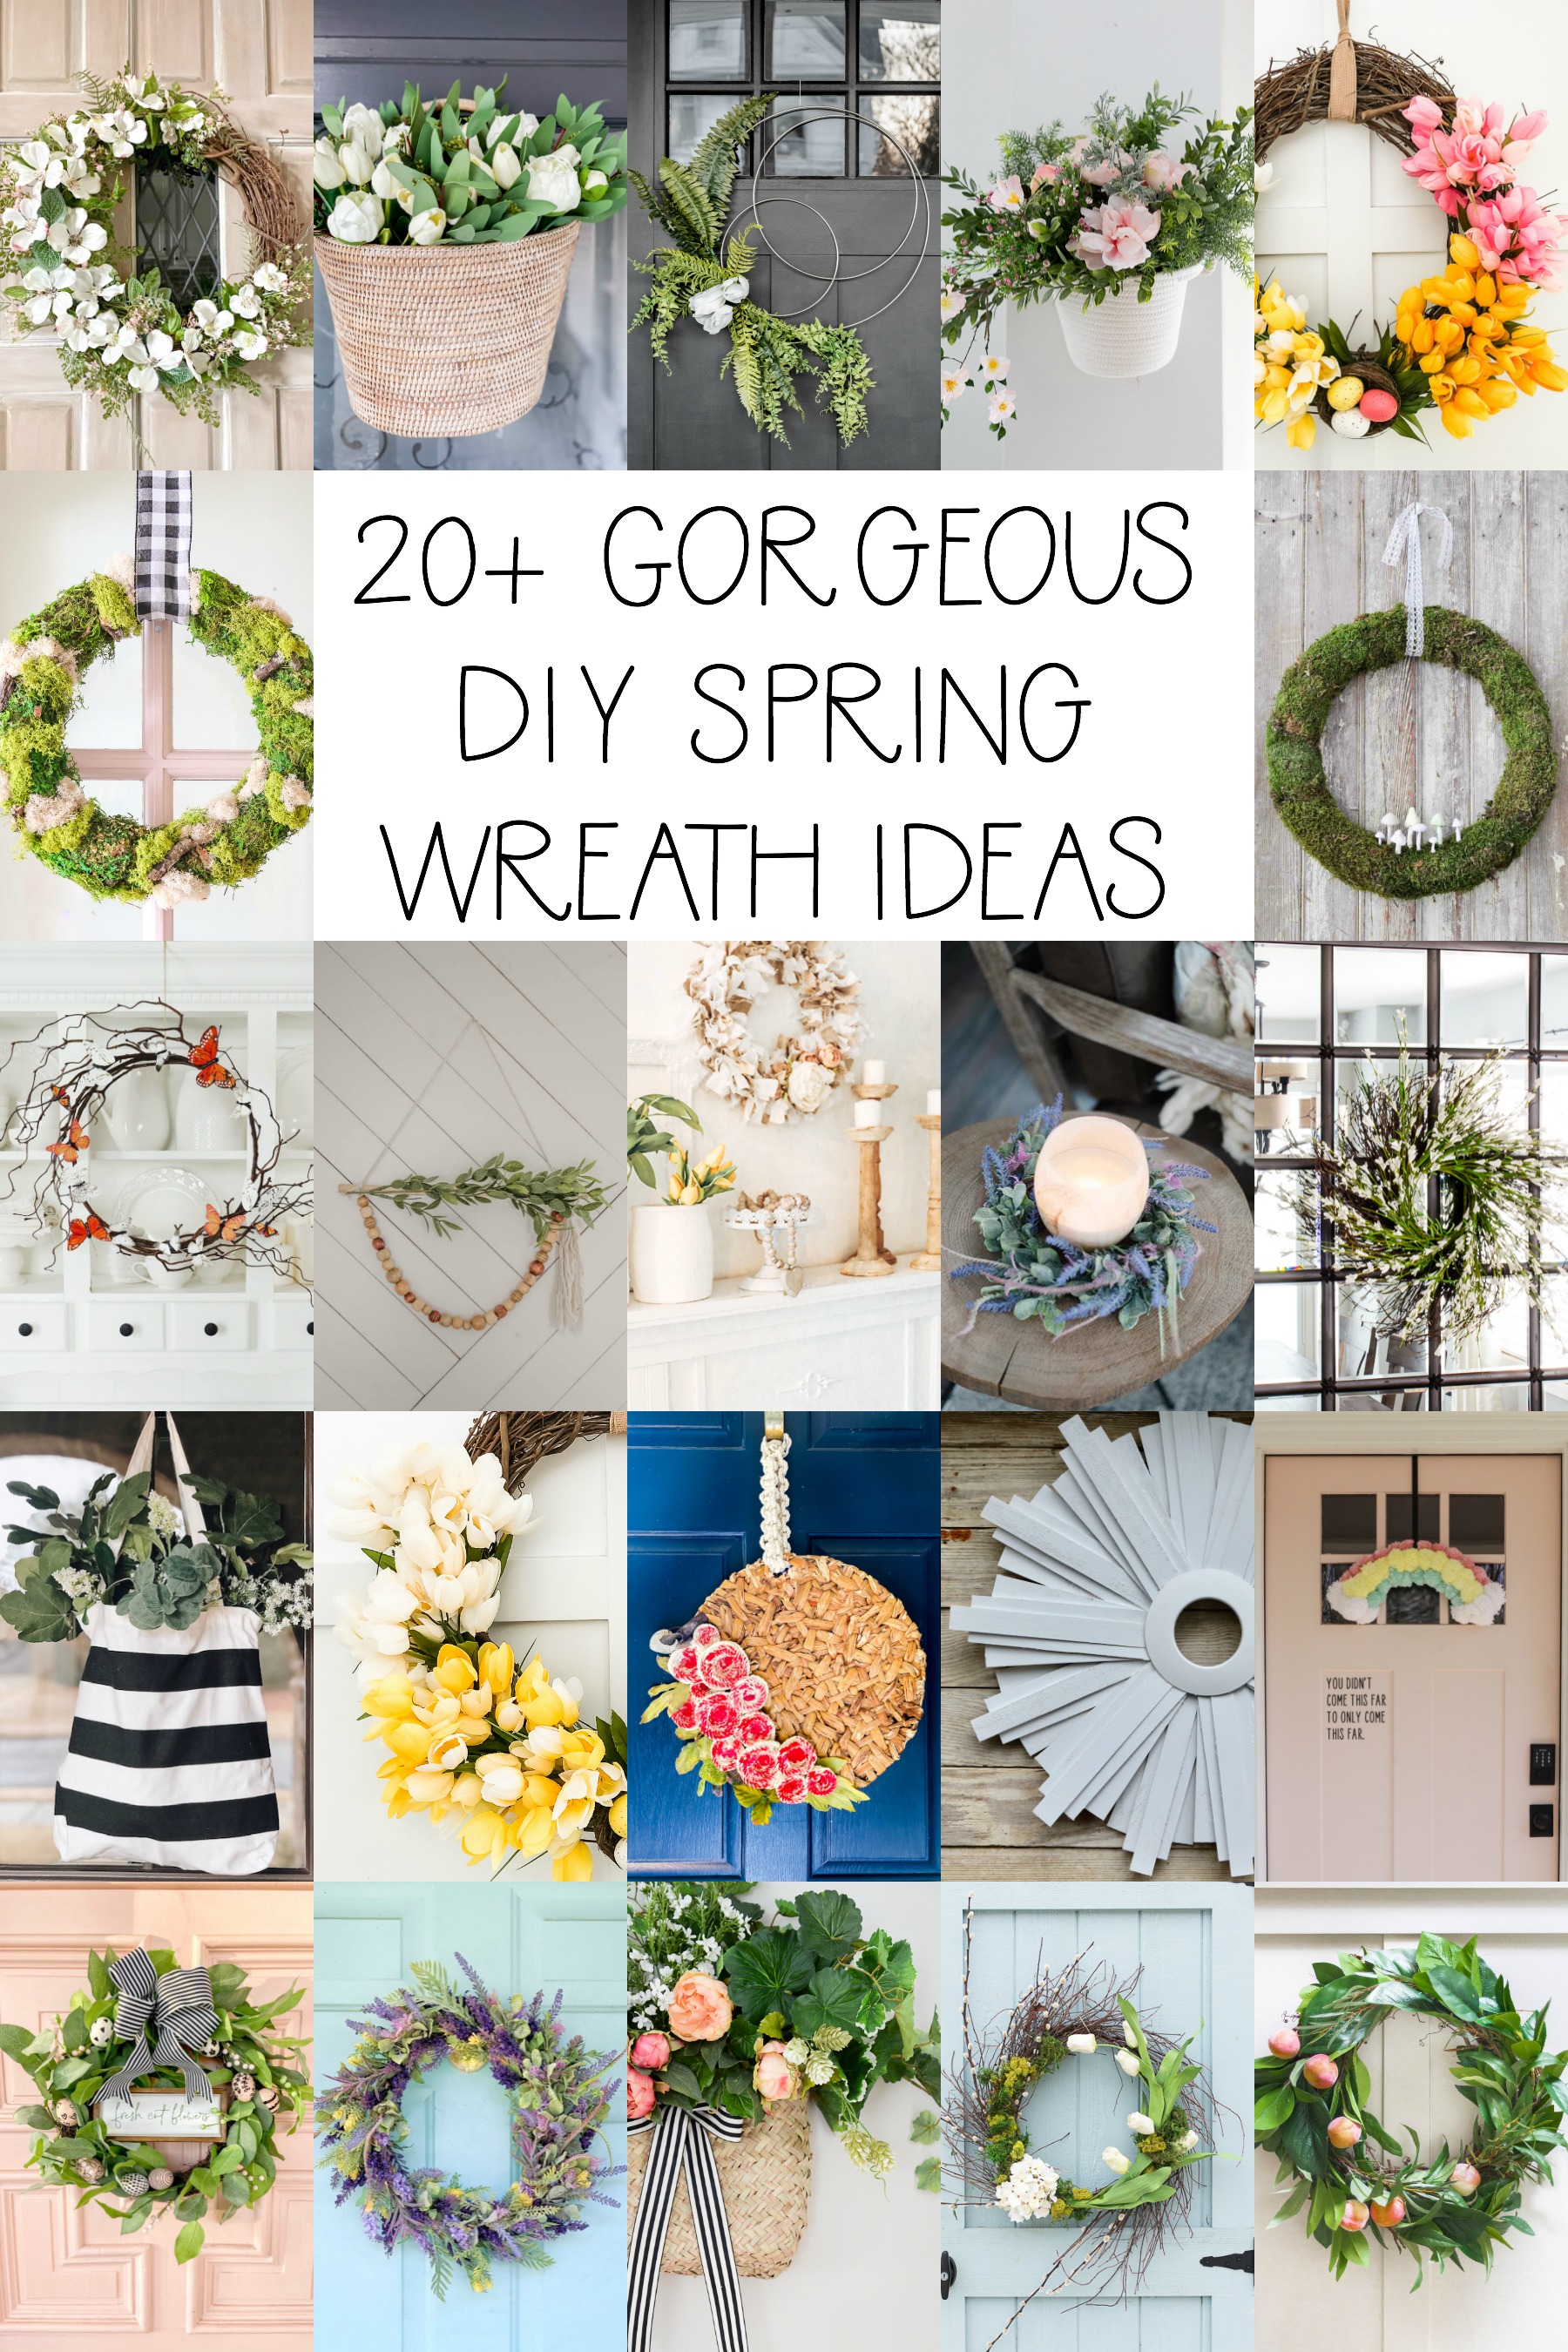 20+ Gorgeous DIY Spring Wreath Ideas poster.